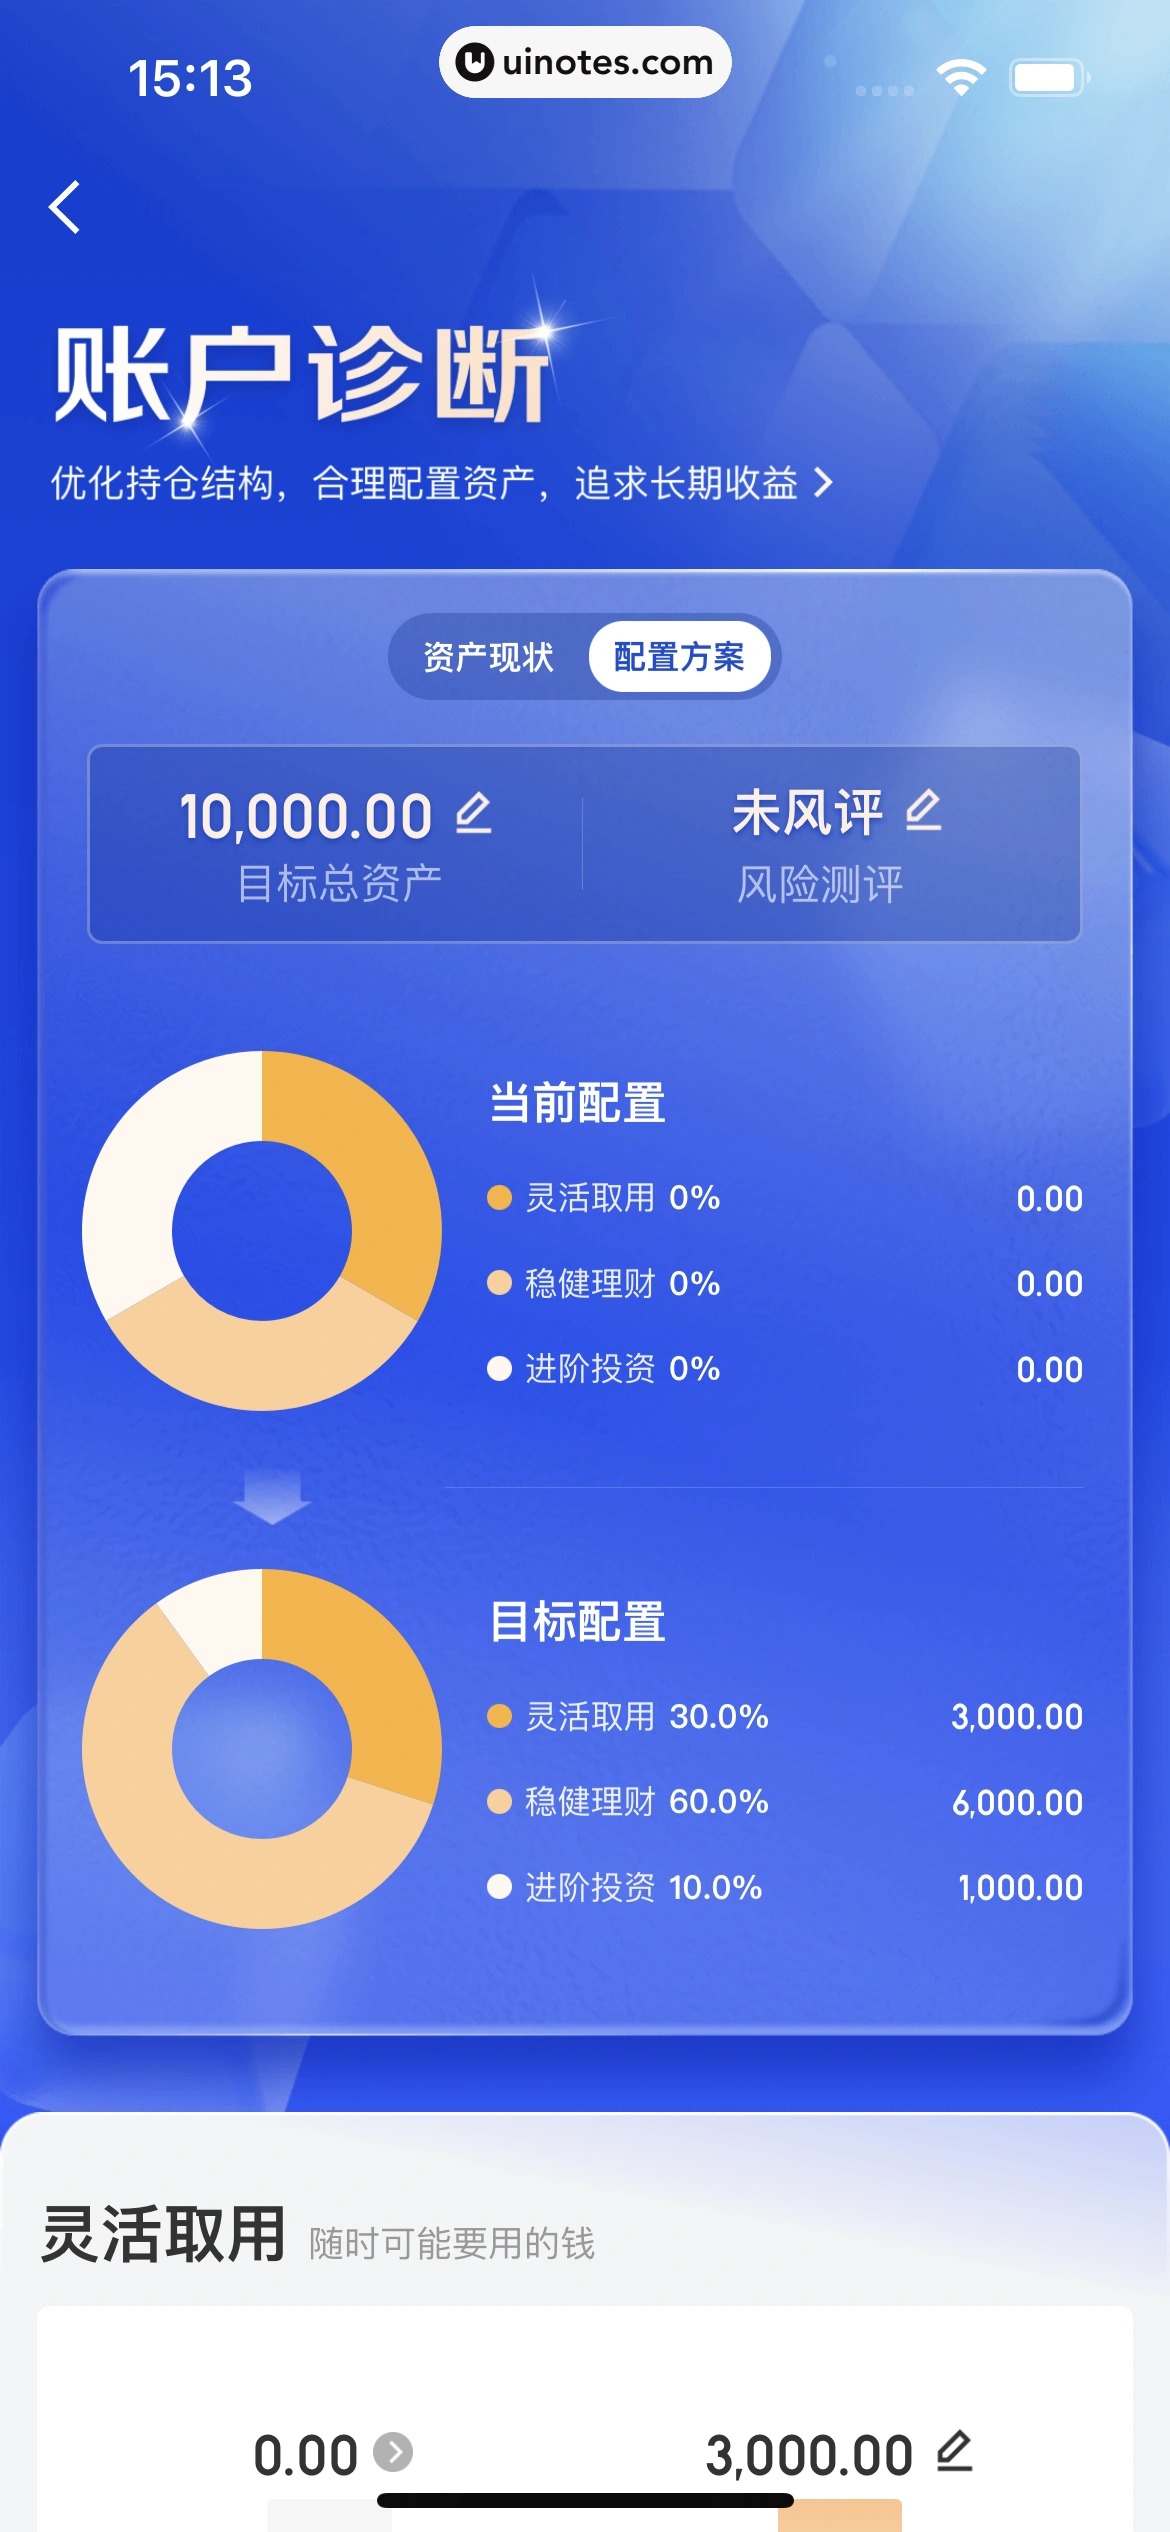 京东金融 App 截图 217 - UI Notes